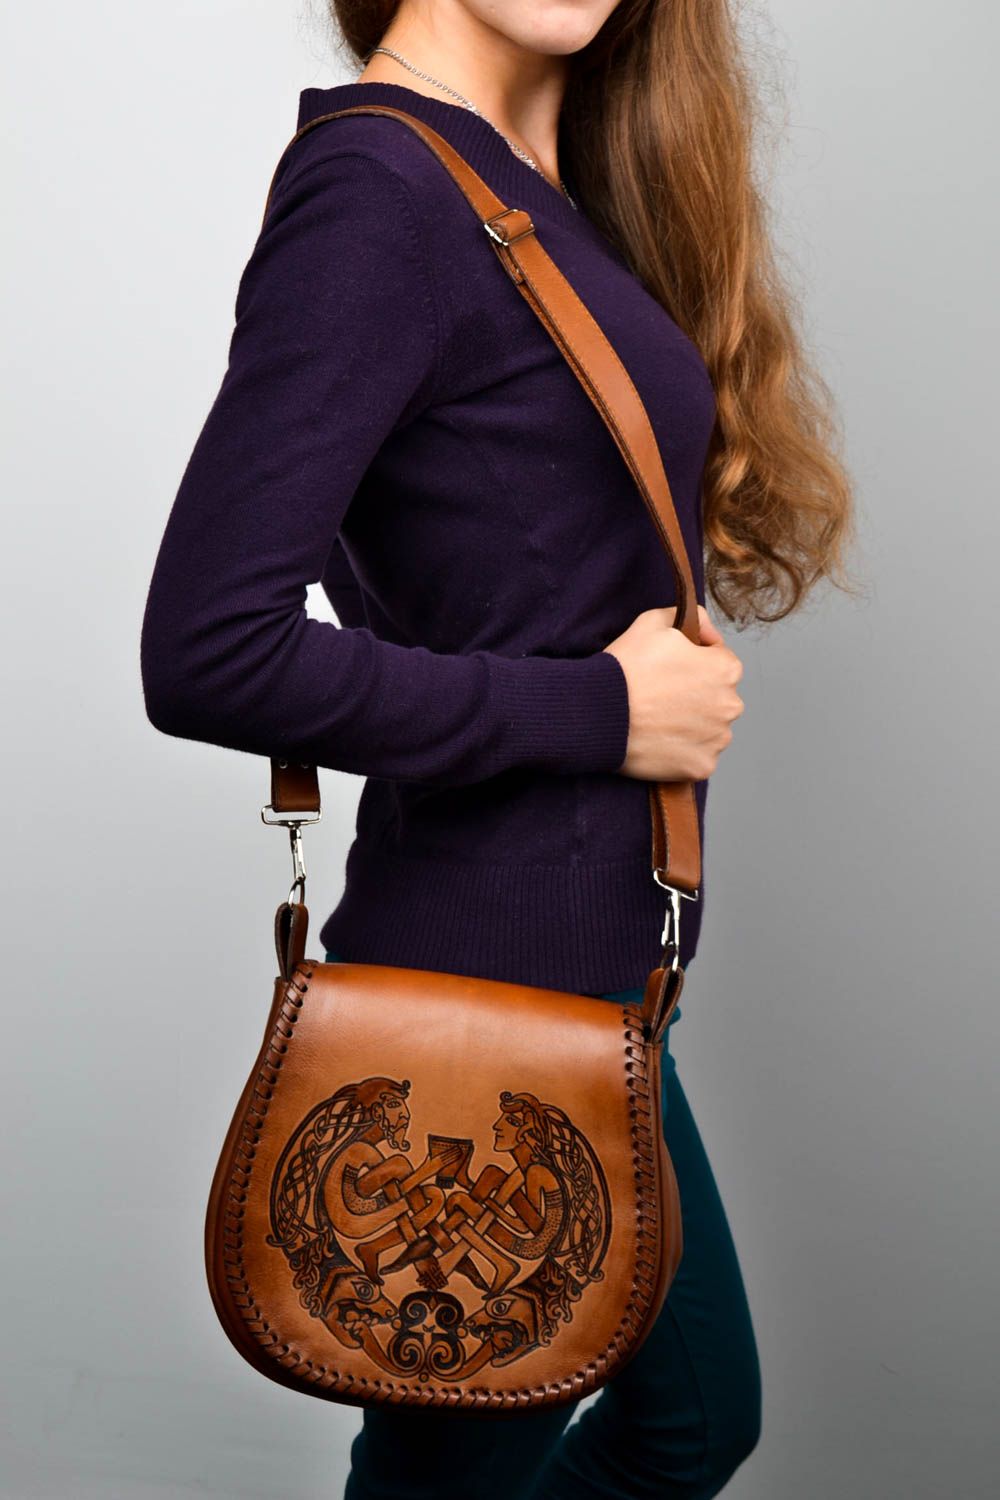 Unusual handmade leather bag shoulder bag design fashion trends for girls photo 1